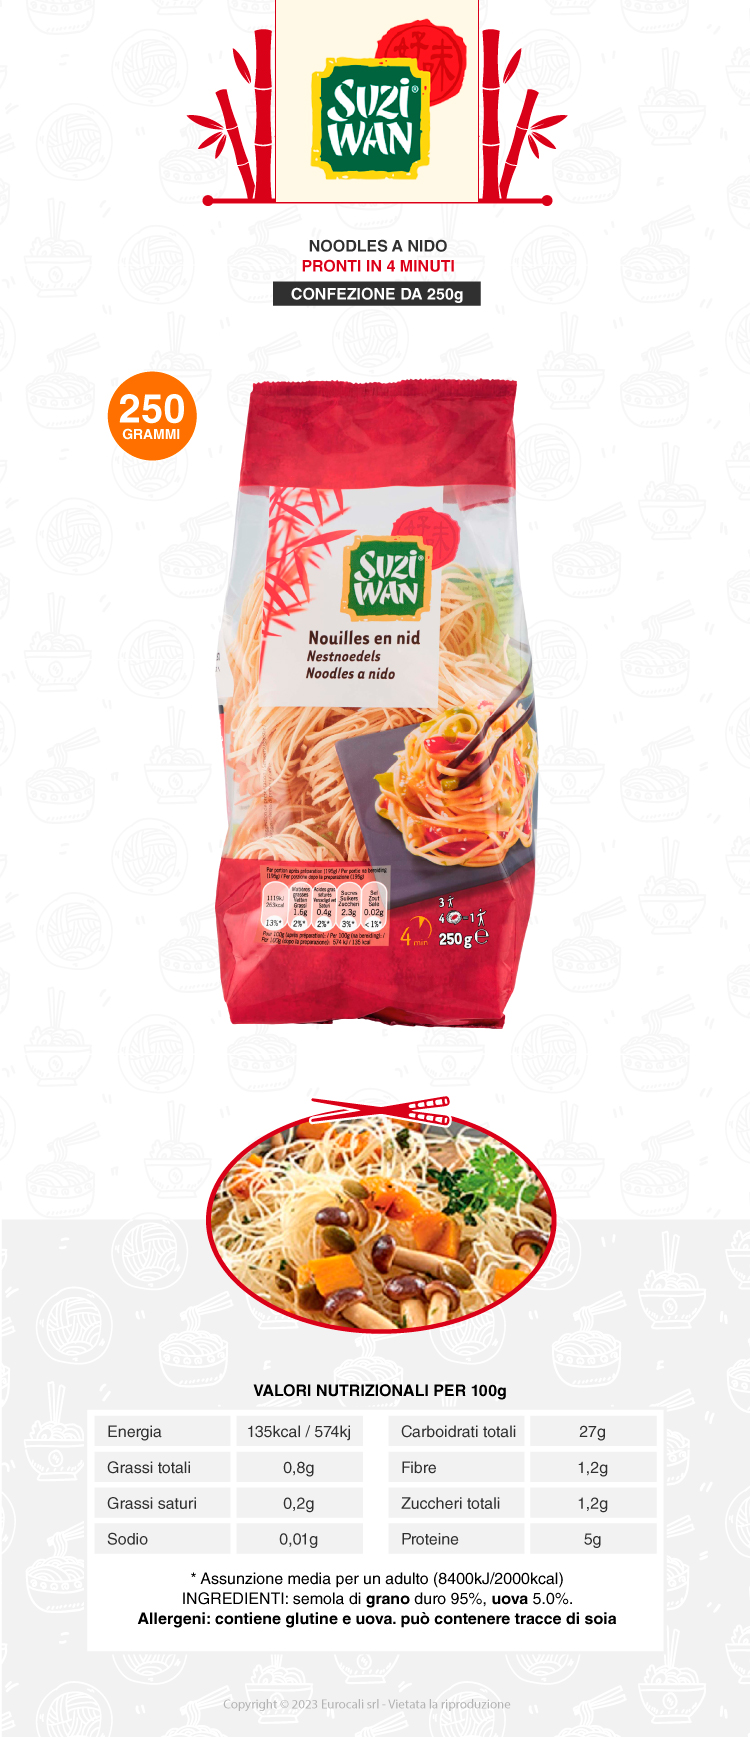 suzi wan - noodles a nido